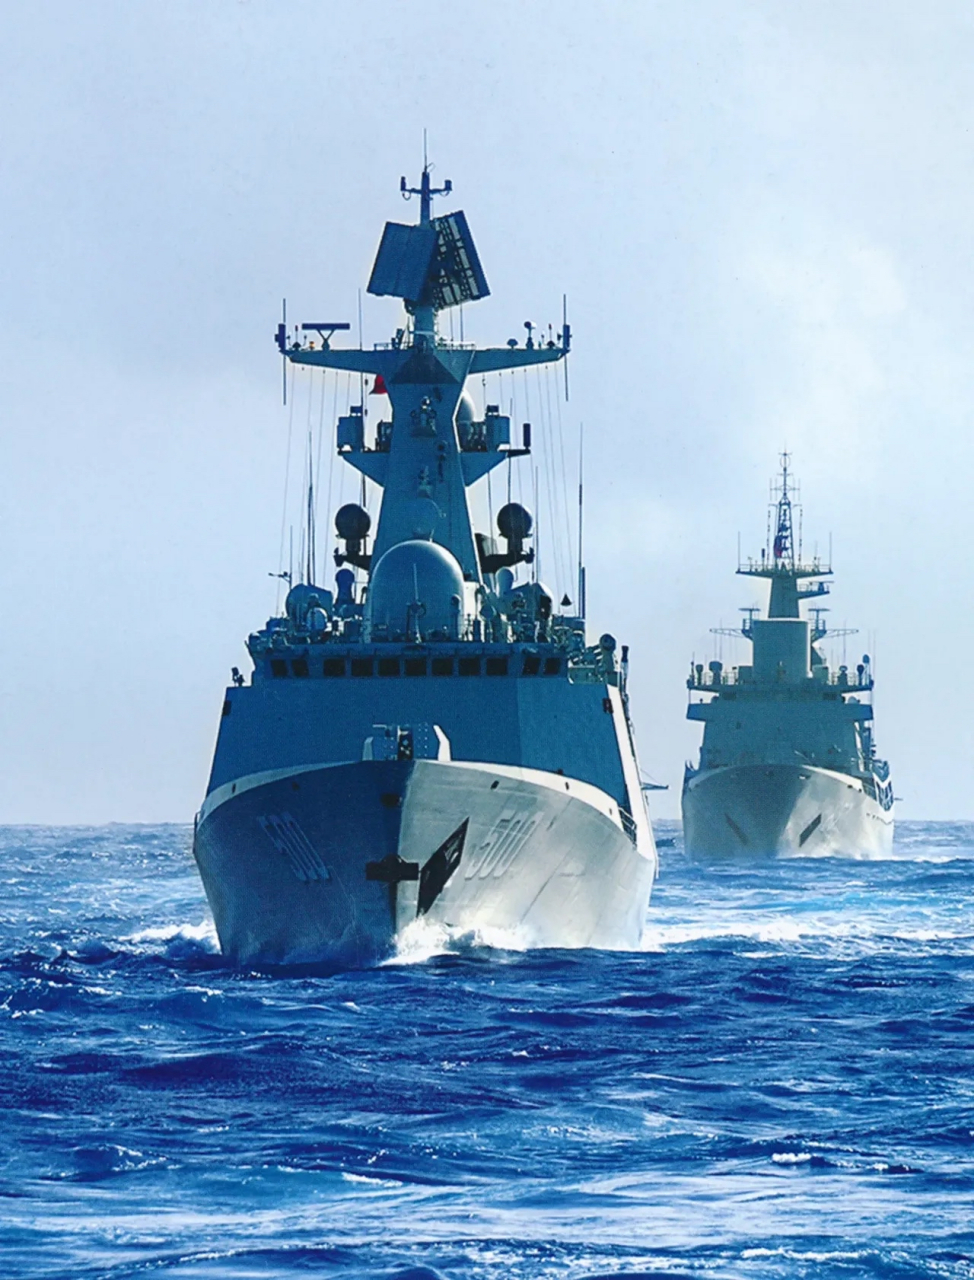 中国9899海军500咸宁舰 054a型护卫舰 该舰为该型的第二批次,加装